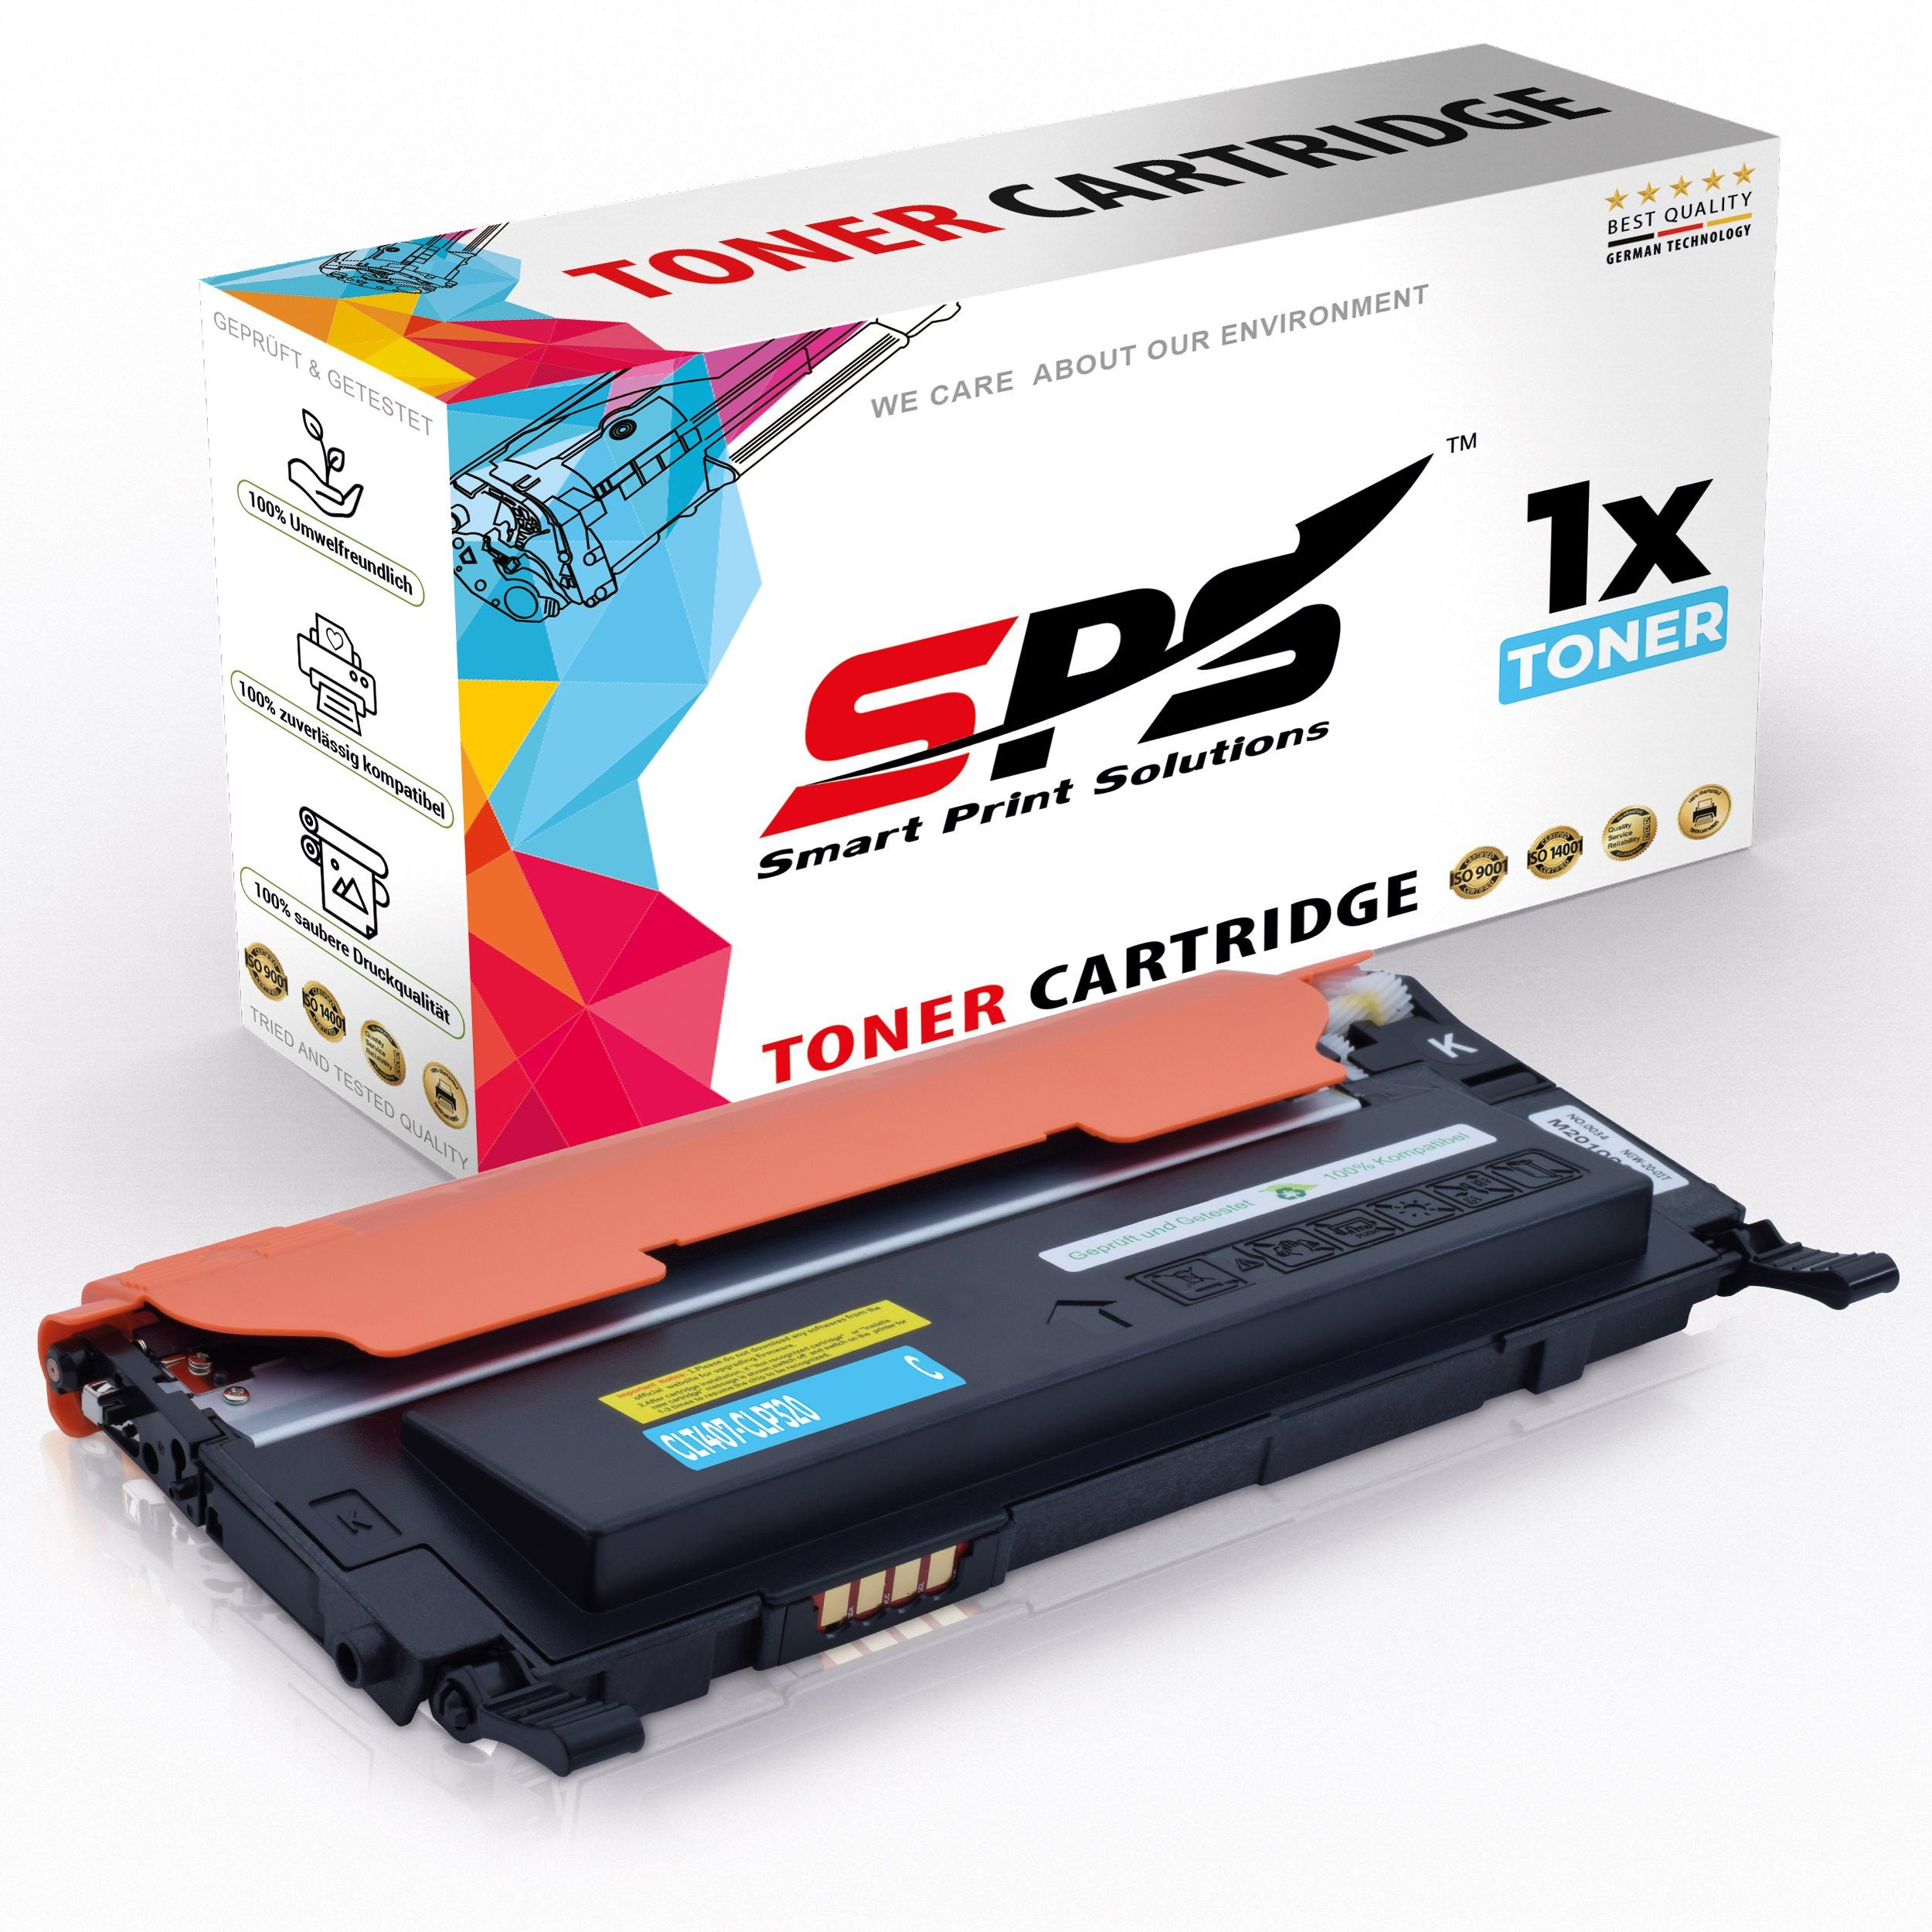 (1er CLP-320N Samsung Pack) SPS Kompatibel CLT-C407S, C407 für Tonerkartusche